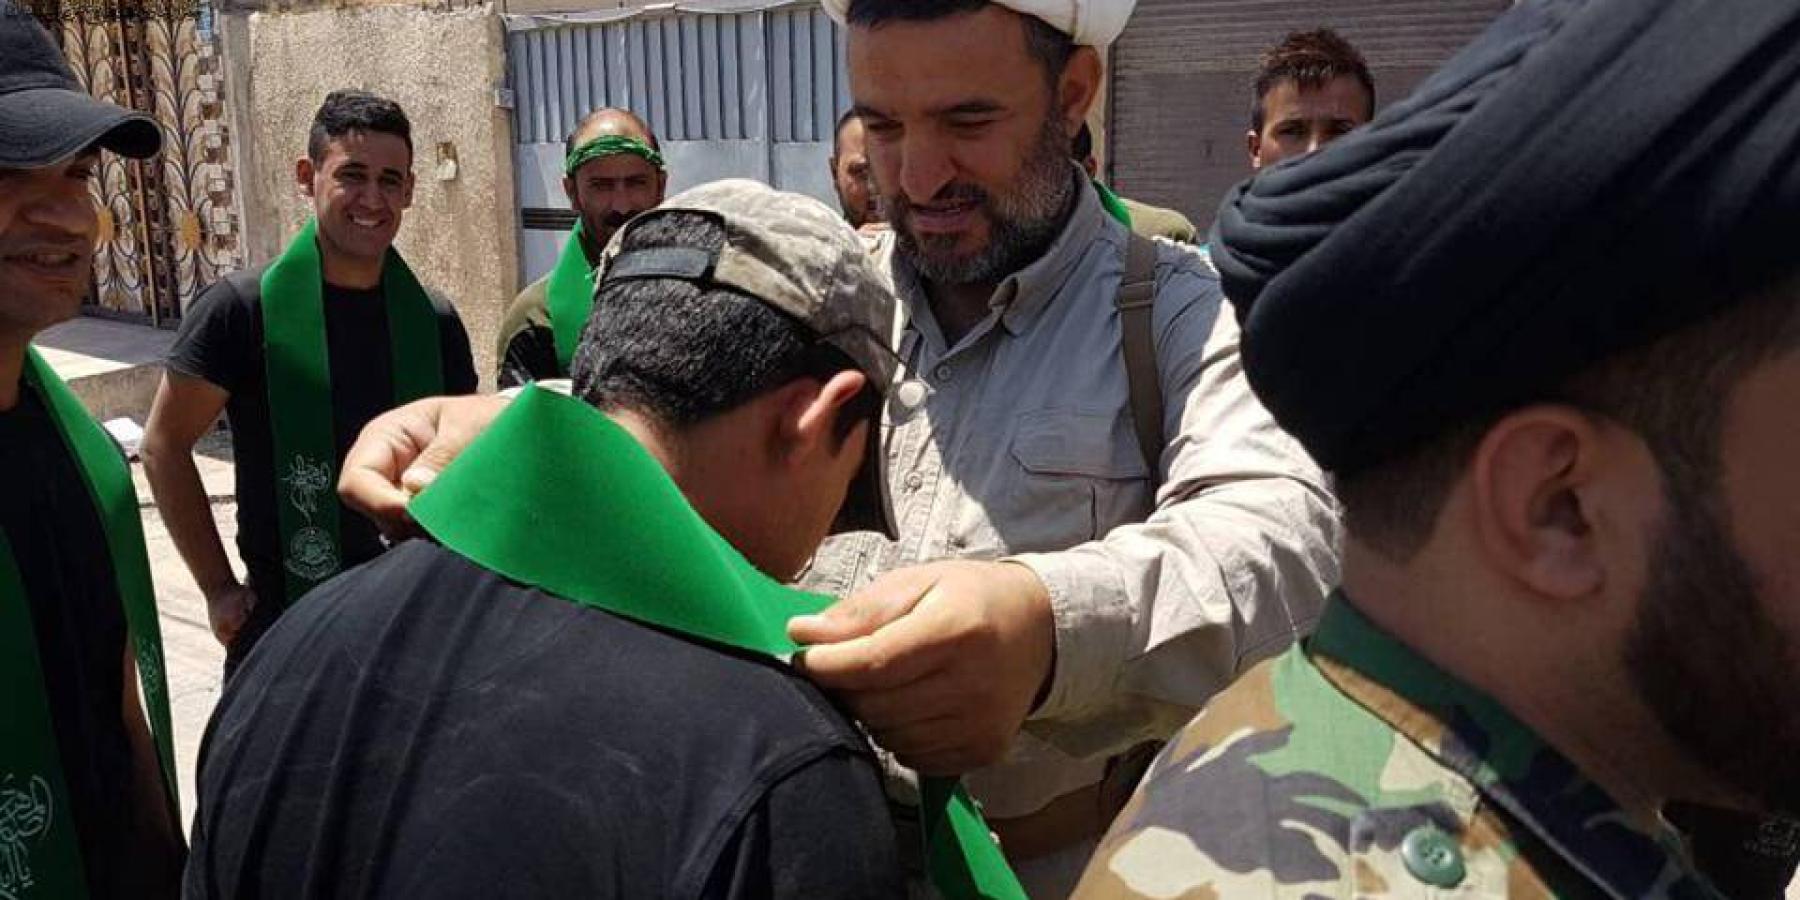 لجنة الإرشاد التابعة للعتبة العلوية في أيمن الموصل تكرم أبطال قواتنا الأمنية بوشاح أمير المؤمنين (ع) 